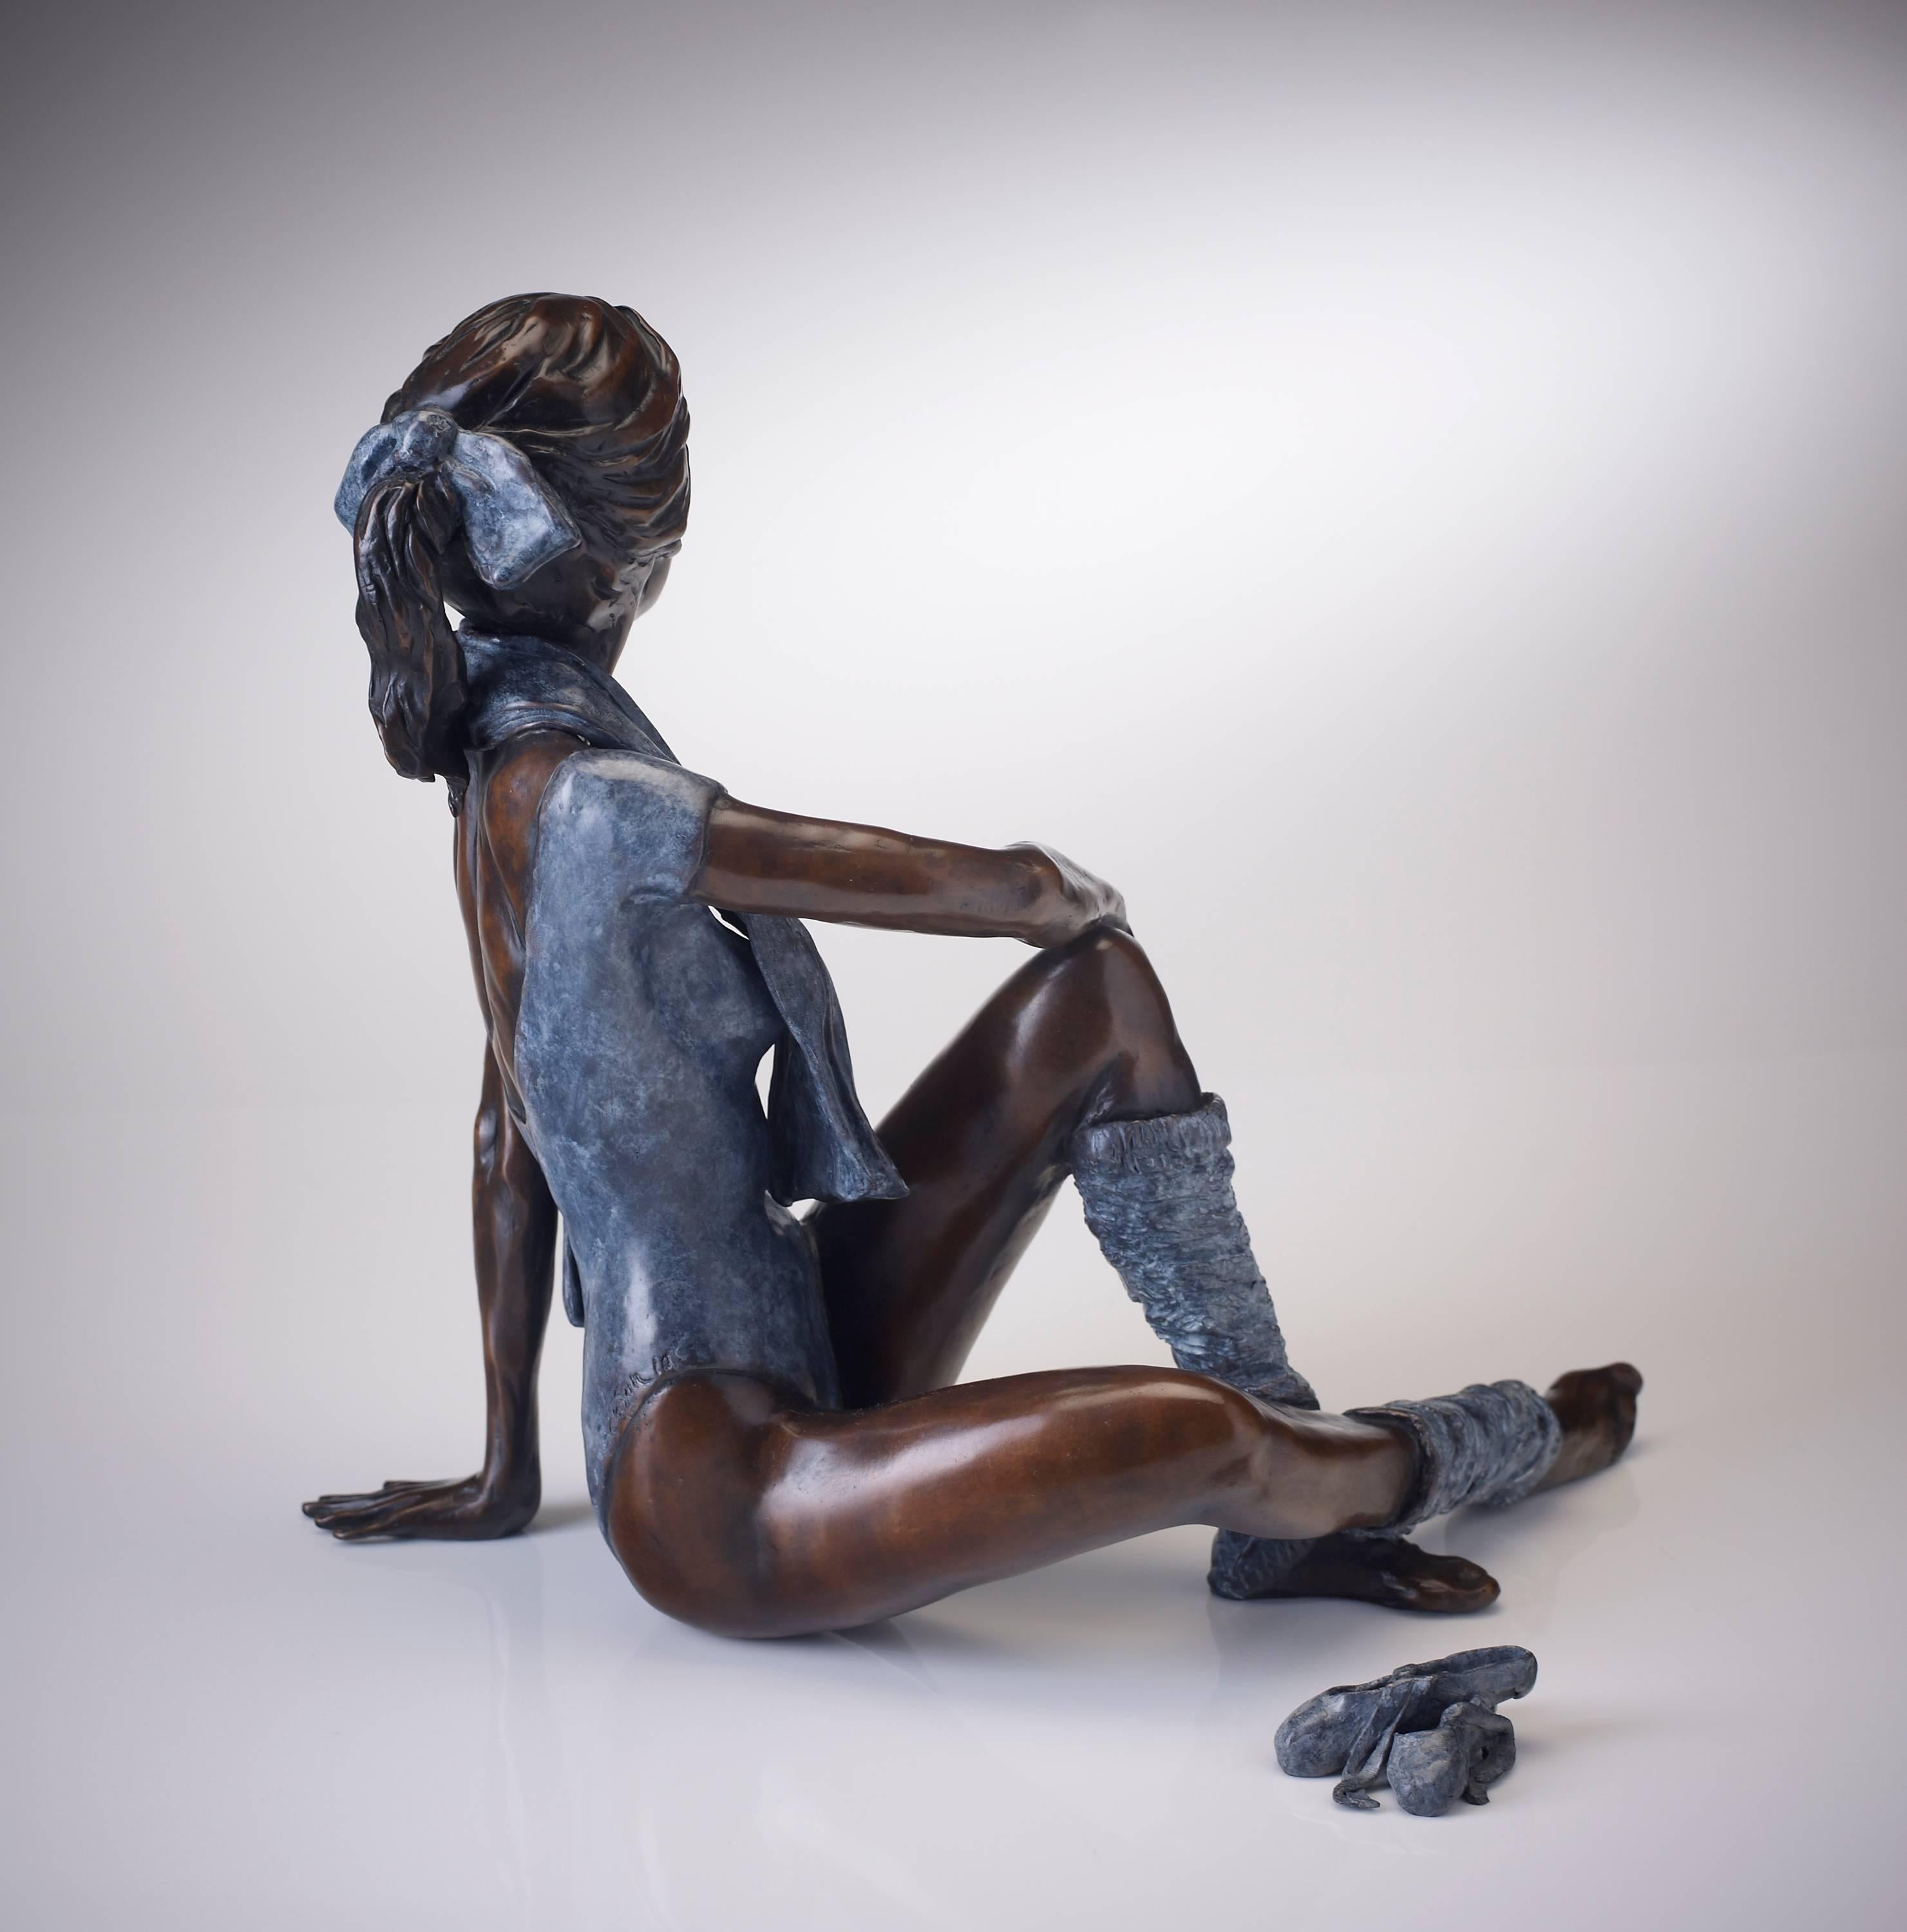 Contemporary Bronze Ballerina Figurative Ballet Dancer 'Attitude' Blue & Brown  - Sculpture by Benson Landes